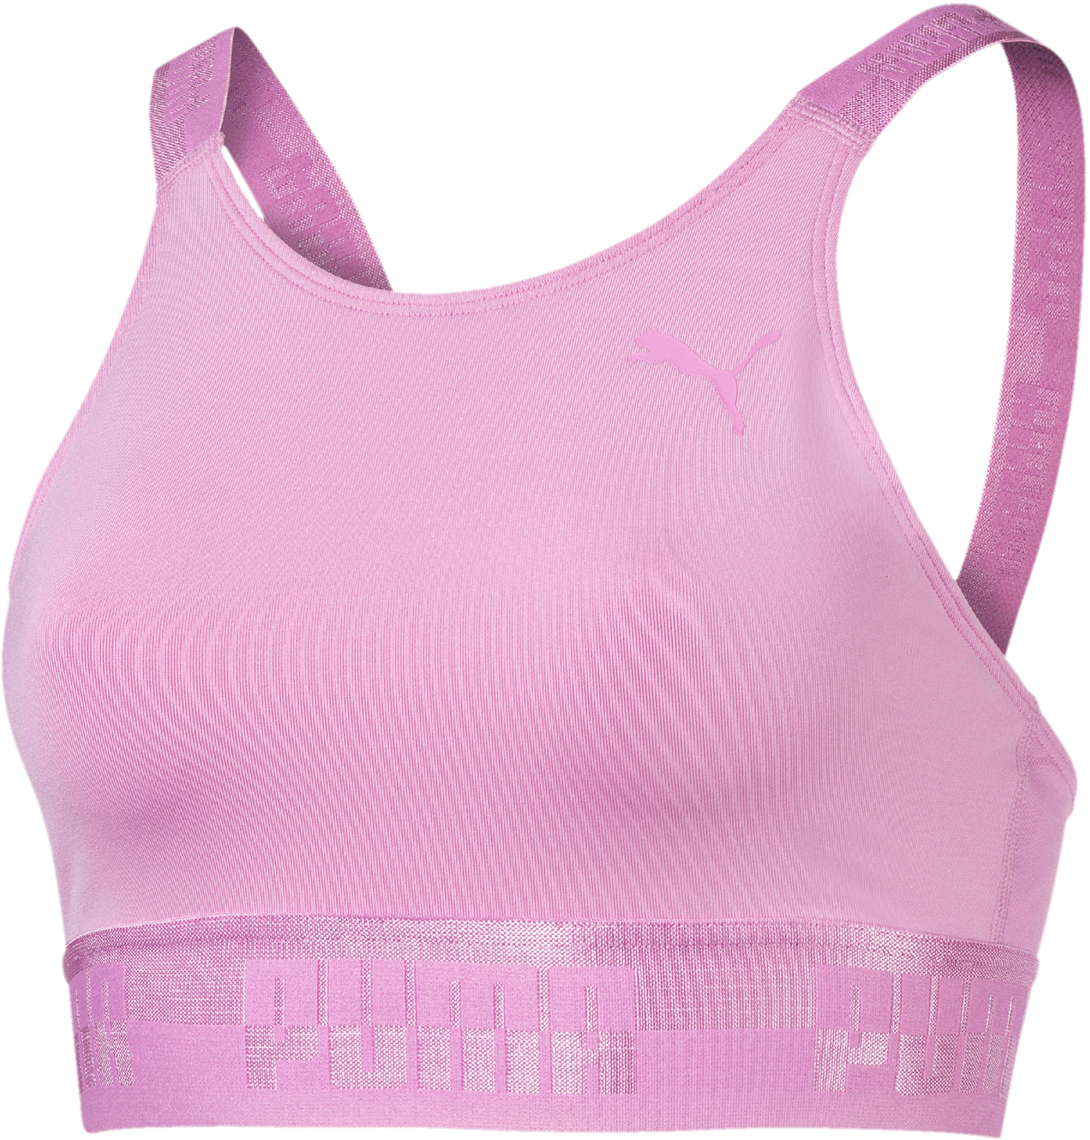 Топ-бра женский Puma Soft Sport Crop Top, цвет: розовый. 85204241. Размер M (44/46)